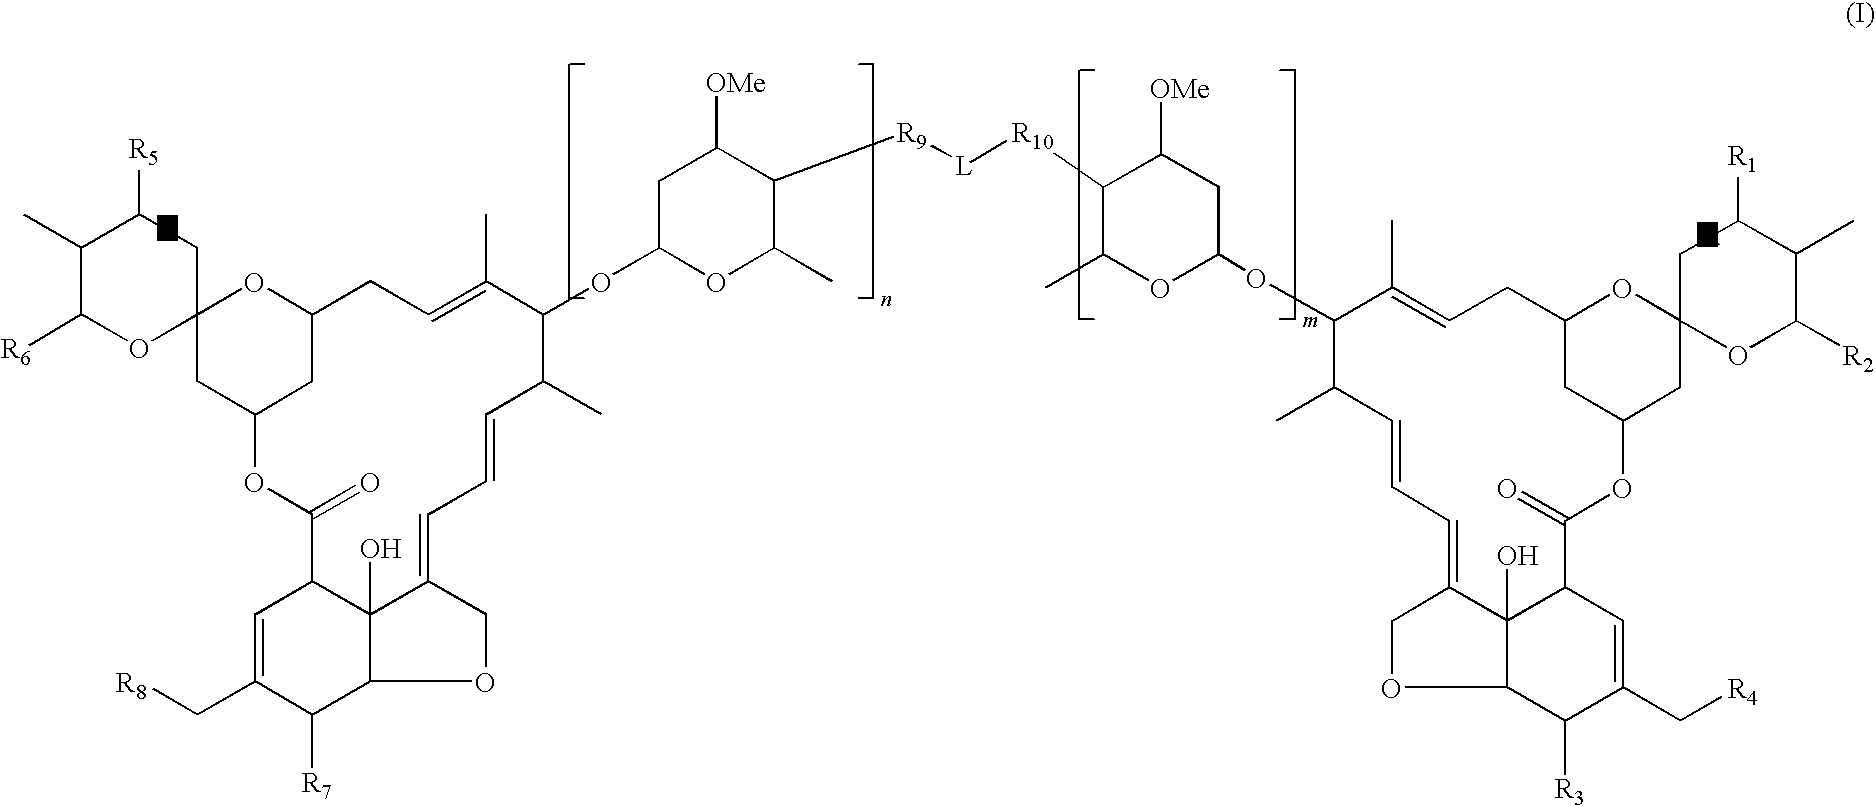 Dimeric avermectin and milbemycin derivatives